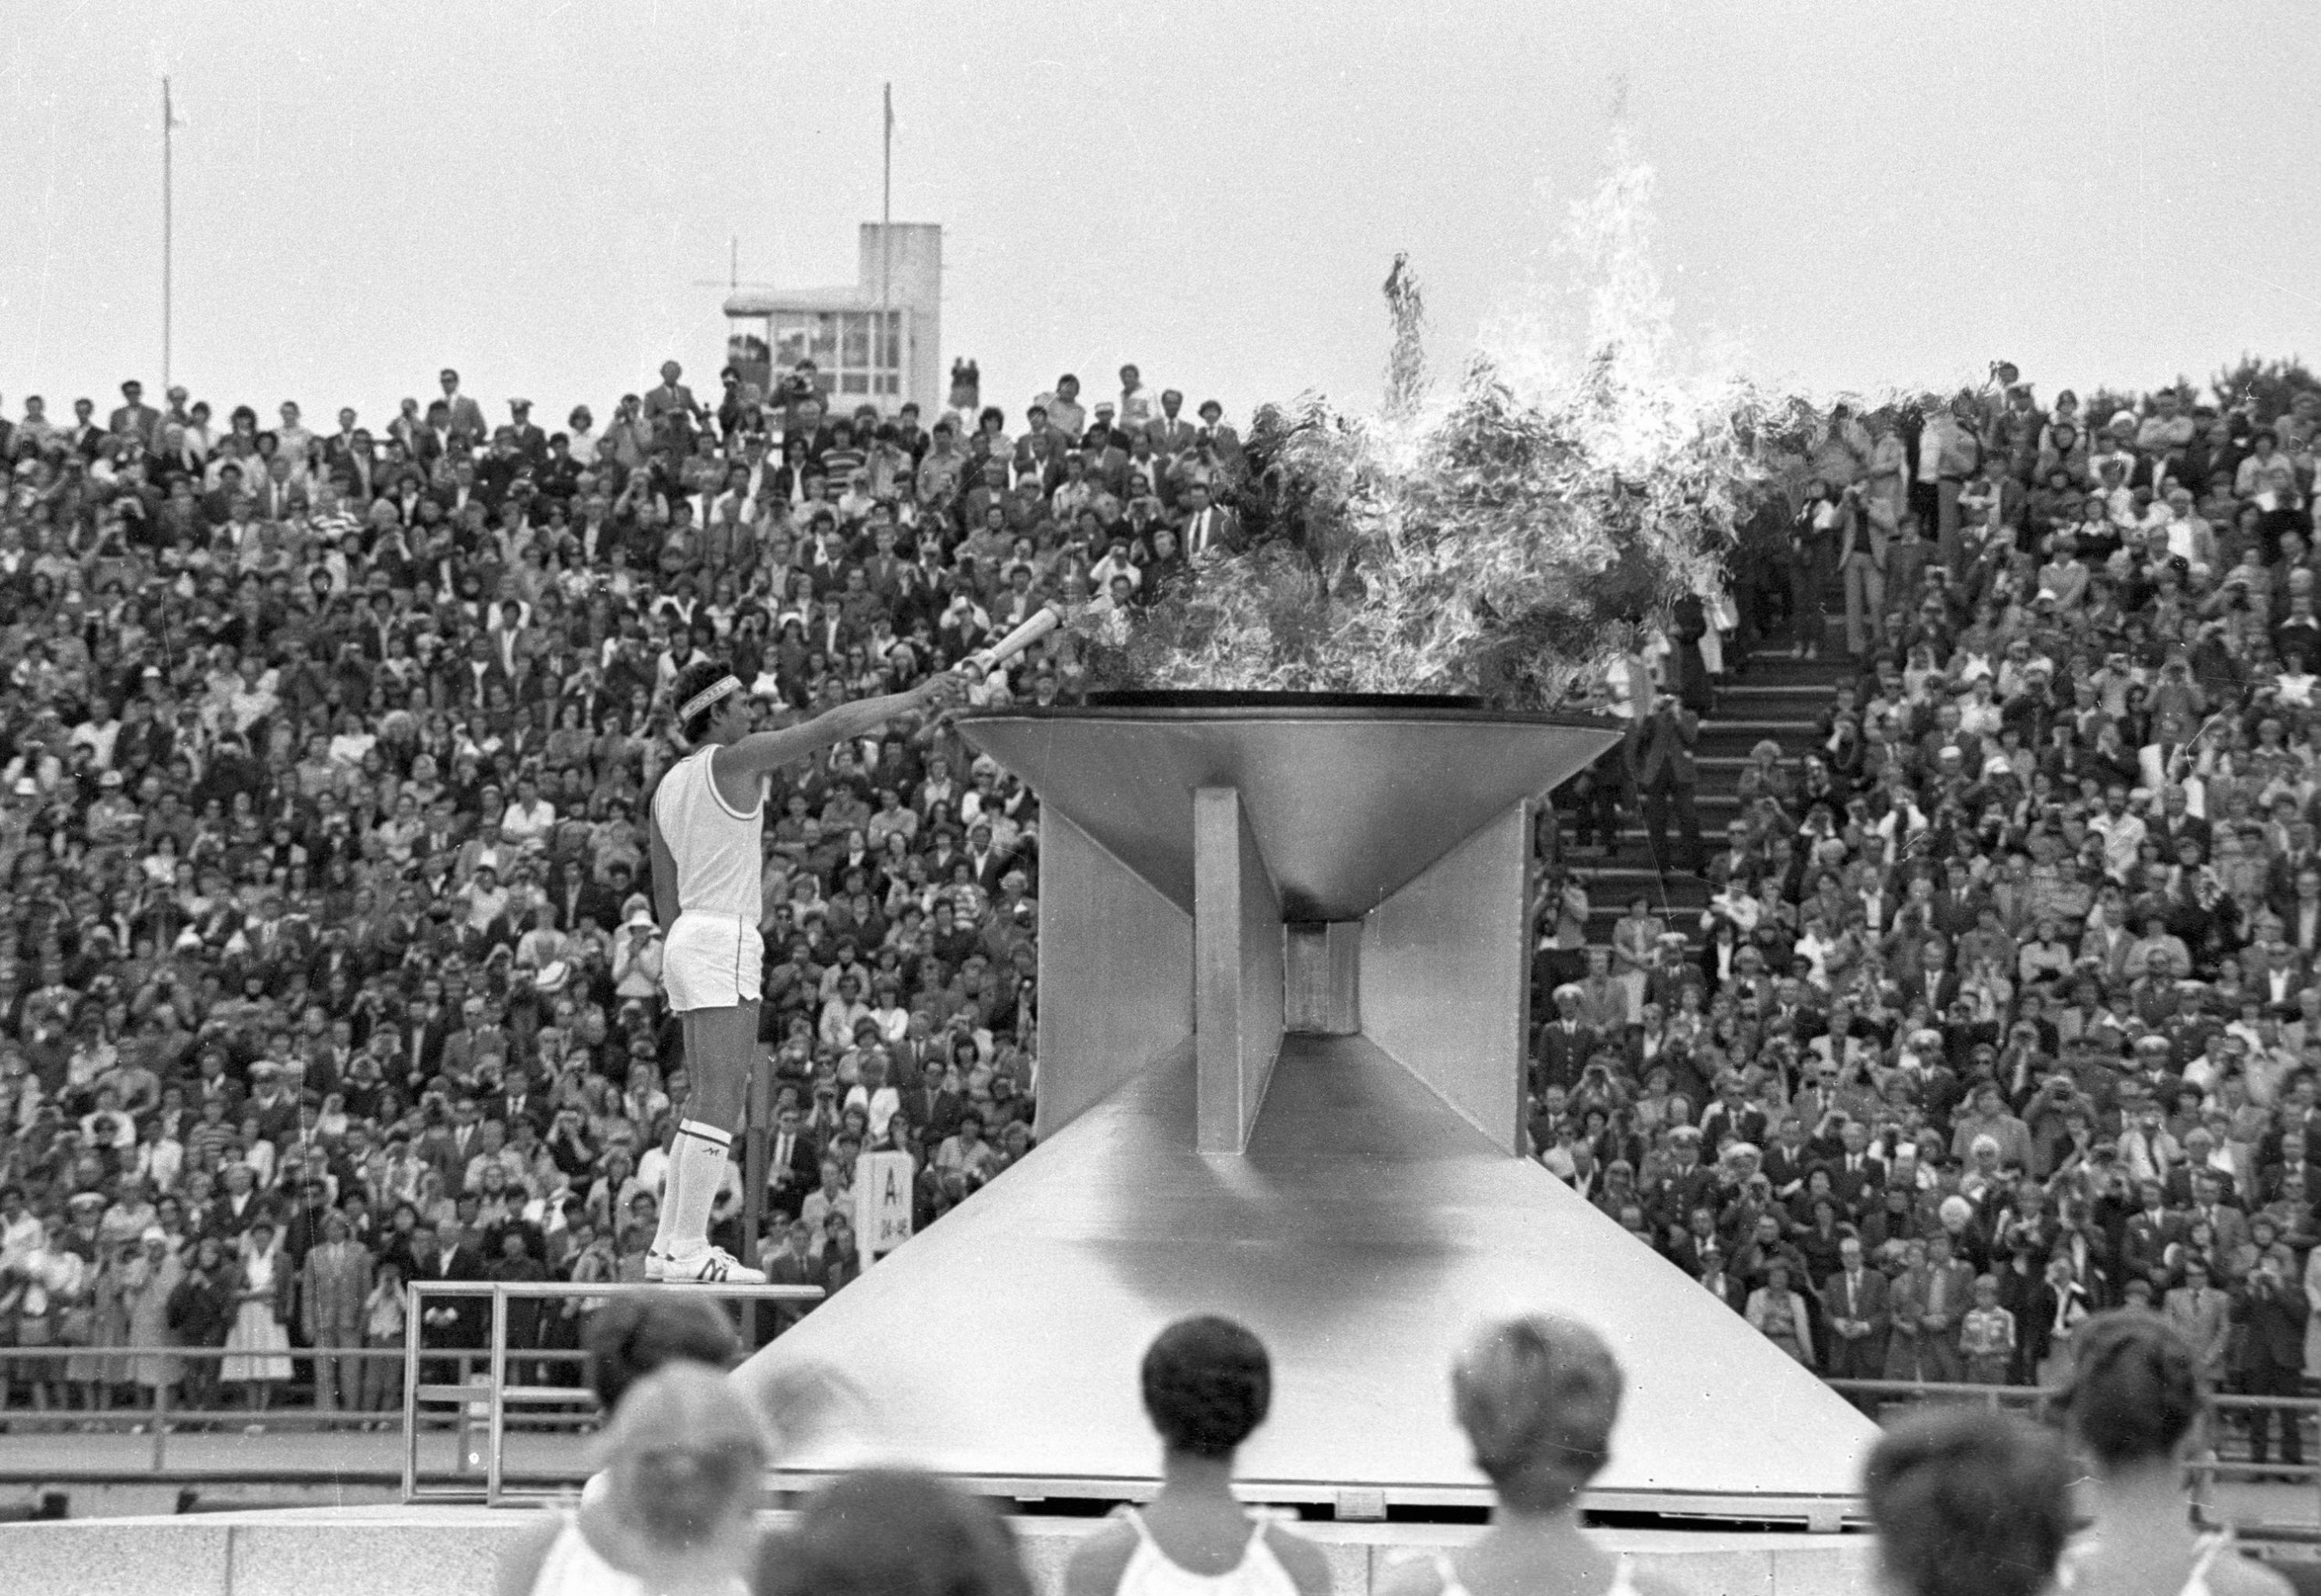 Чемпион мира среди юниоров по буерному спорту в классе "ДН" Вайко Вооремаа зажигает олимпийский огонь во время торжественной церемонии открытия парусной регаты, входящей в программу XXII Олимпийских игр в Таллине